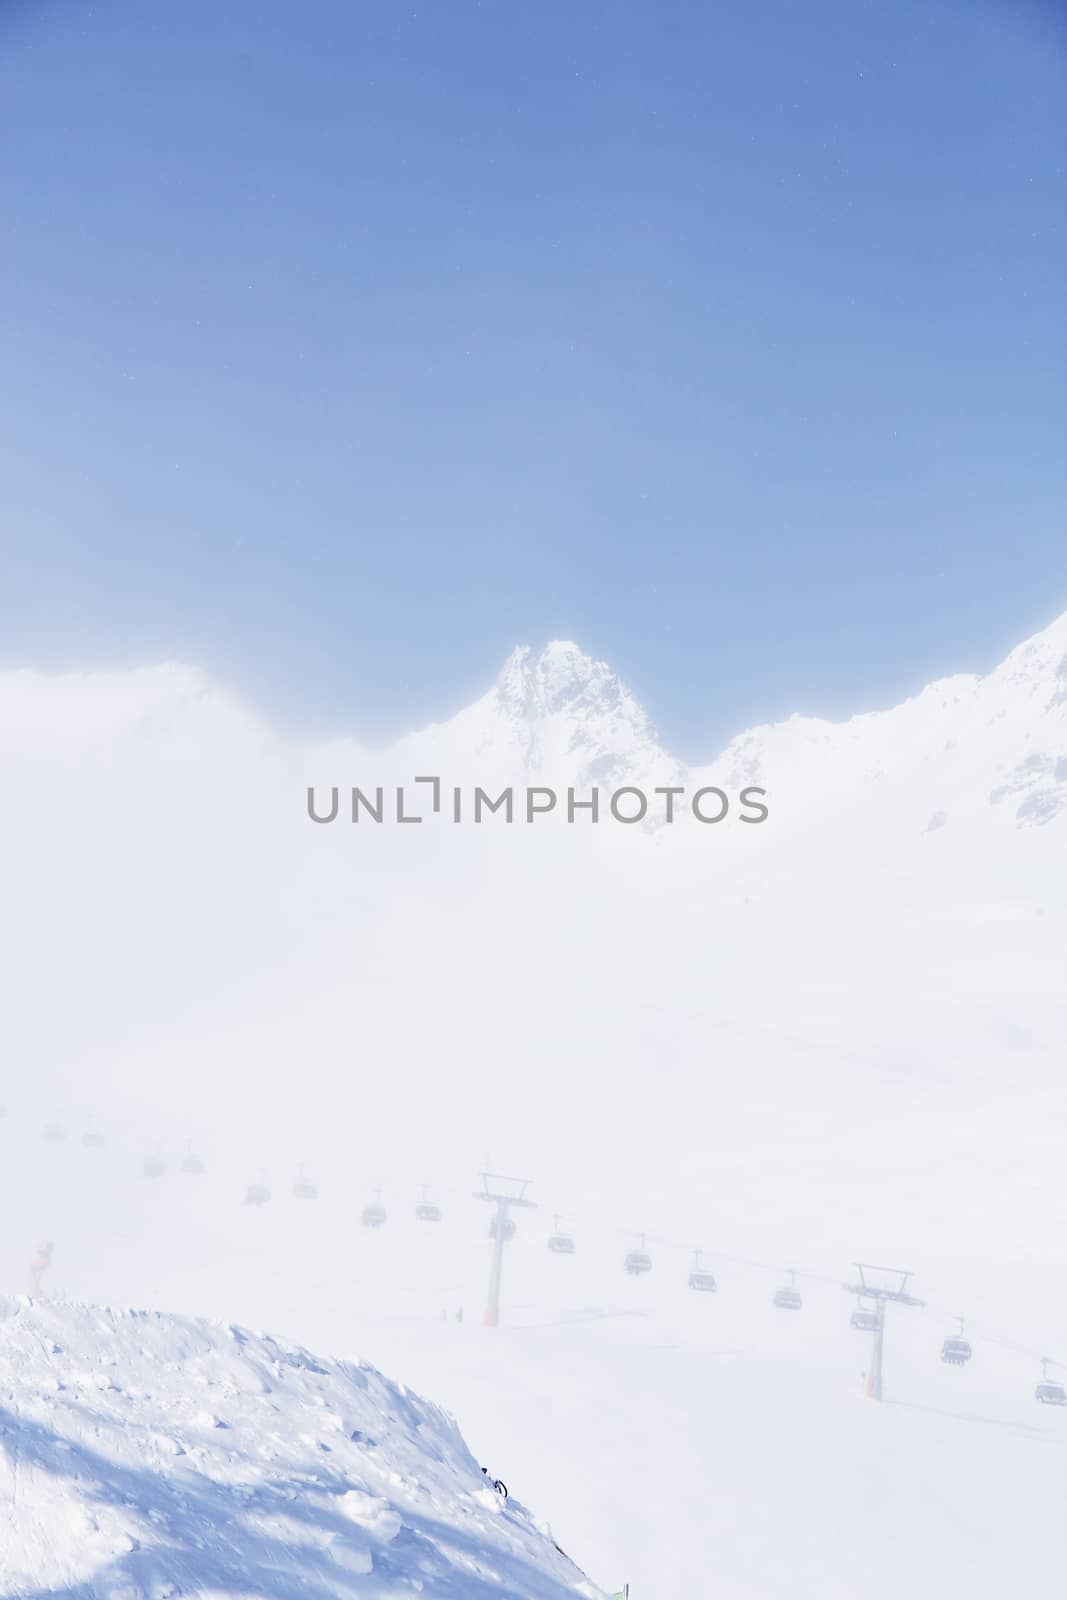 Ski lift in mountains by destillat